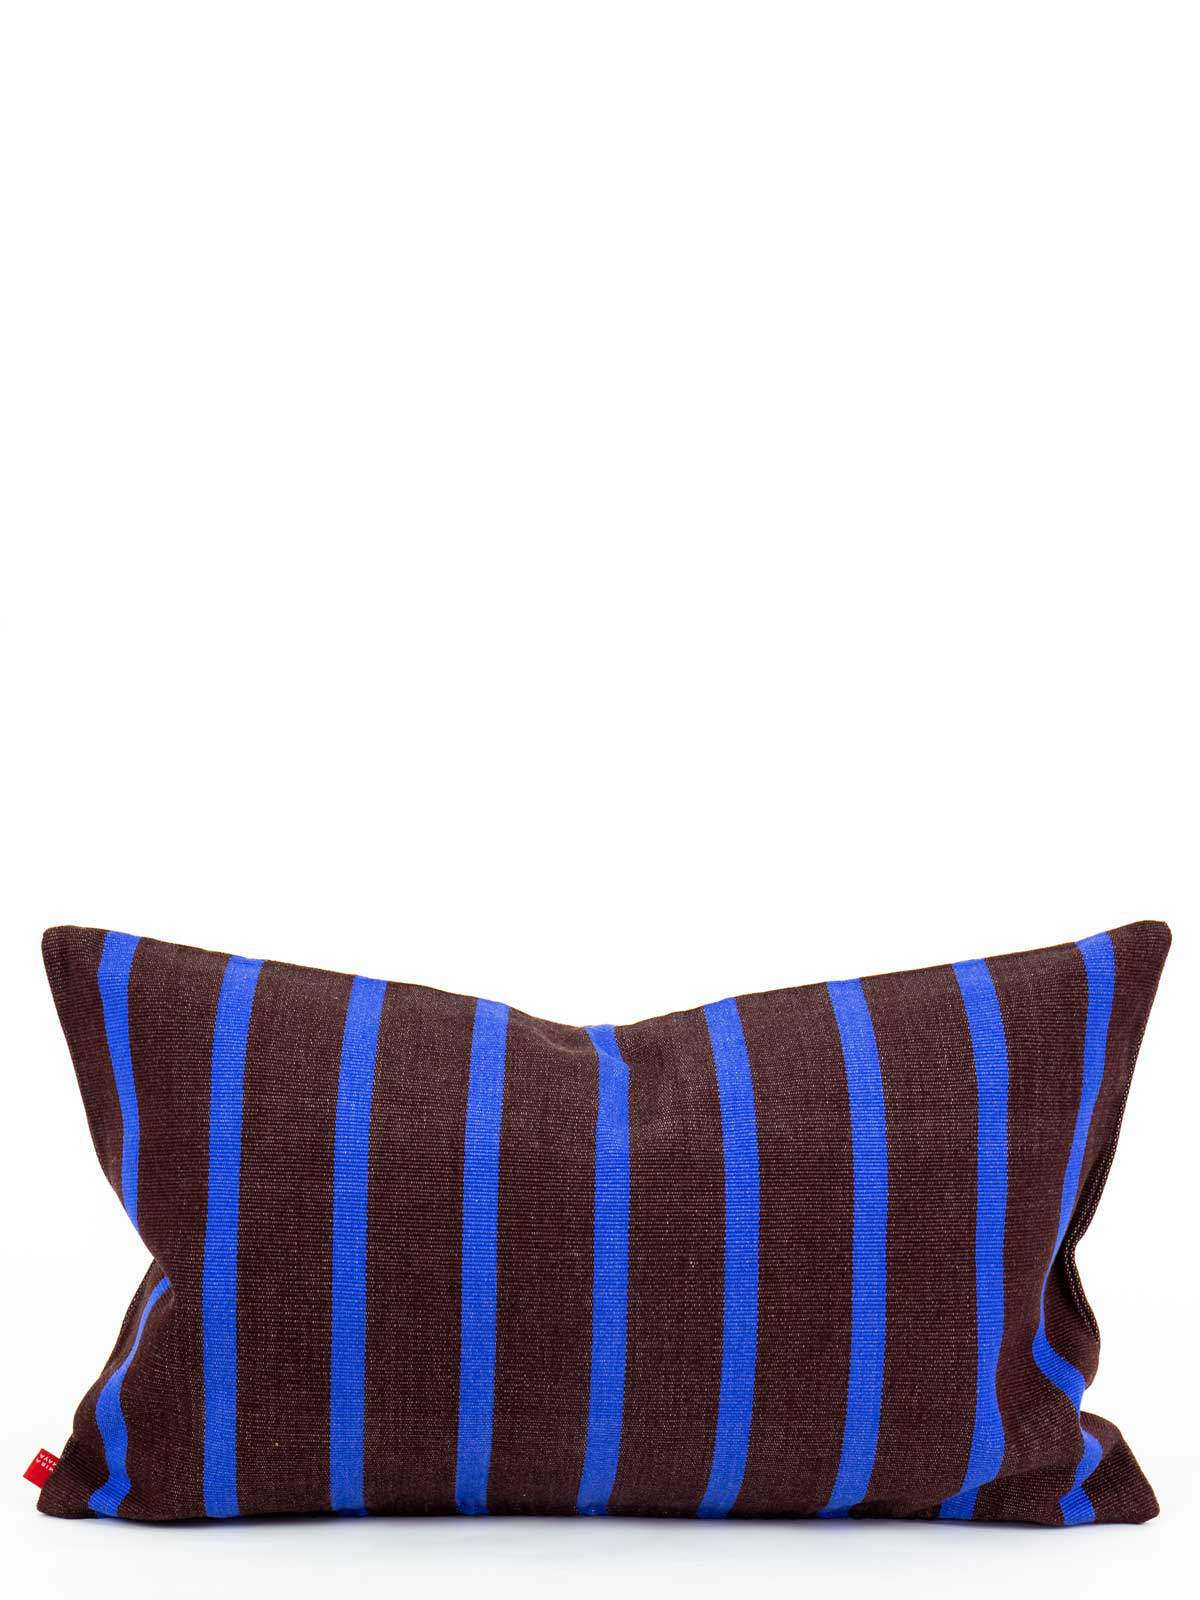 AMERICA Cushion (30x50cm), brown/blue